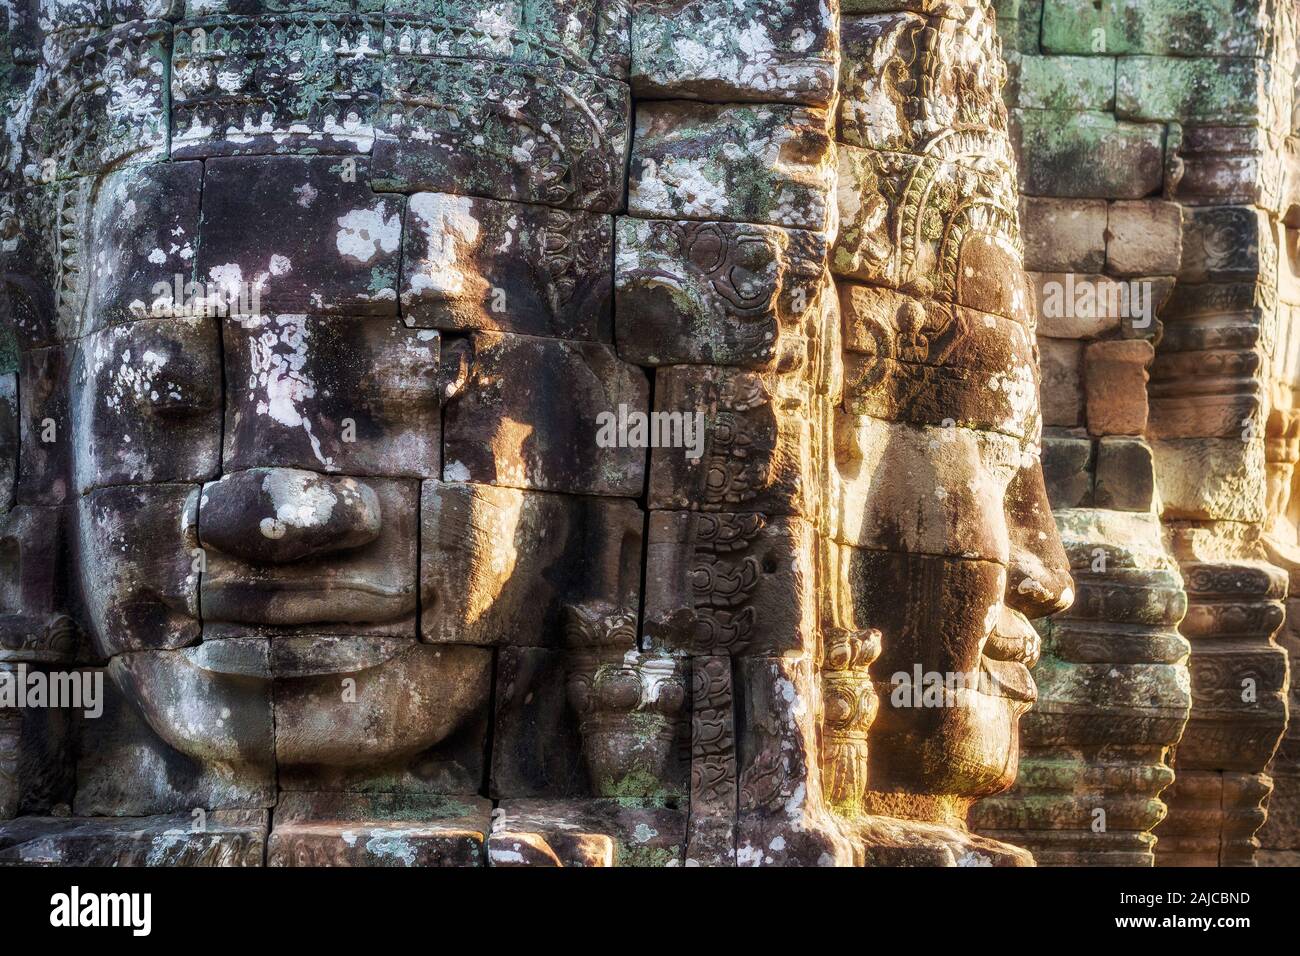 Visages de pierre géant à l'ancien temple Bayon à Angkor, Siem Reap, Cambodge. Banque D'Images